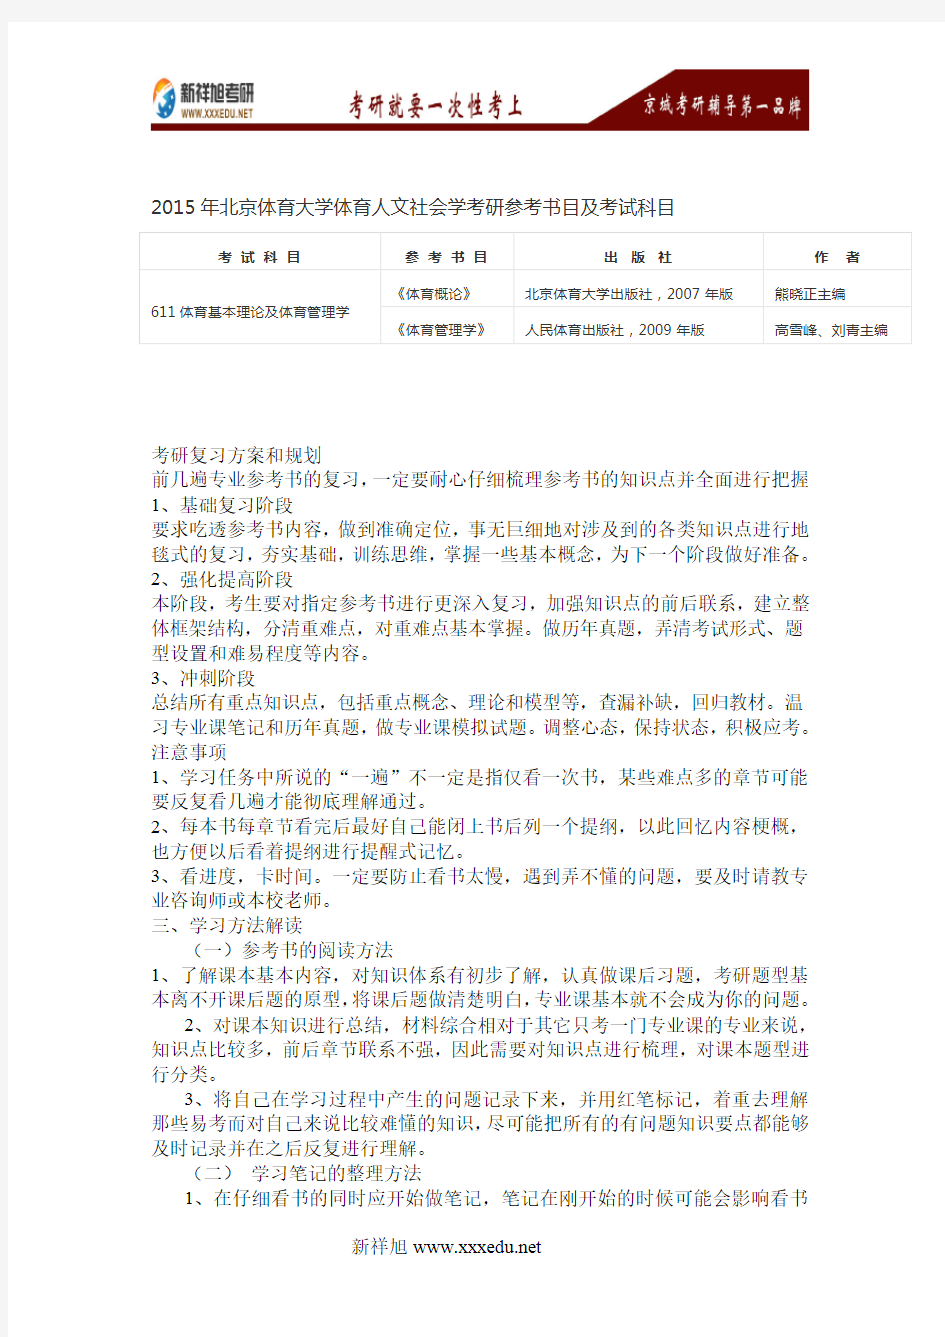 2016年北京体育大学体育人文社会学考研参考书目及考试科目